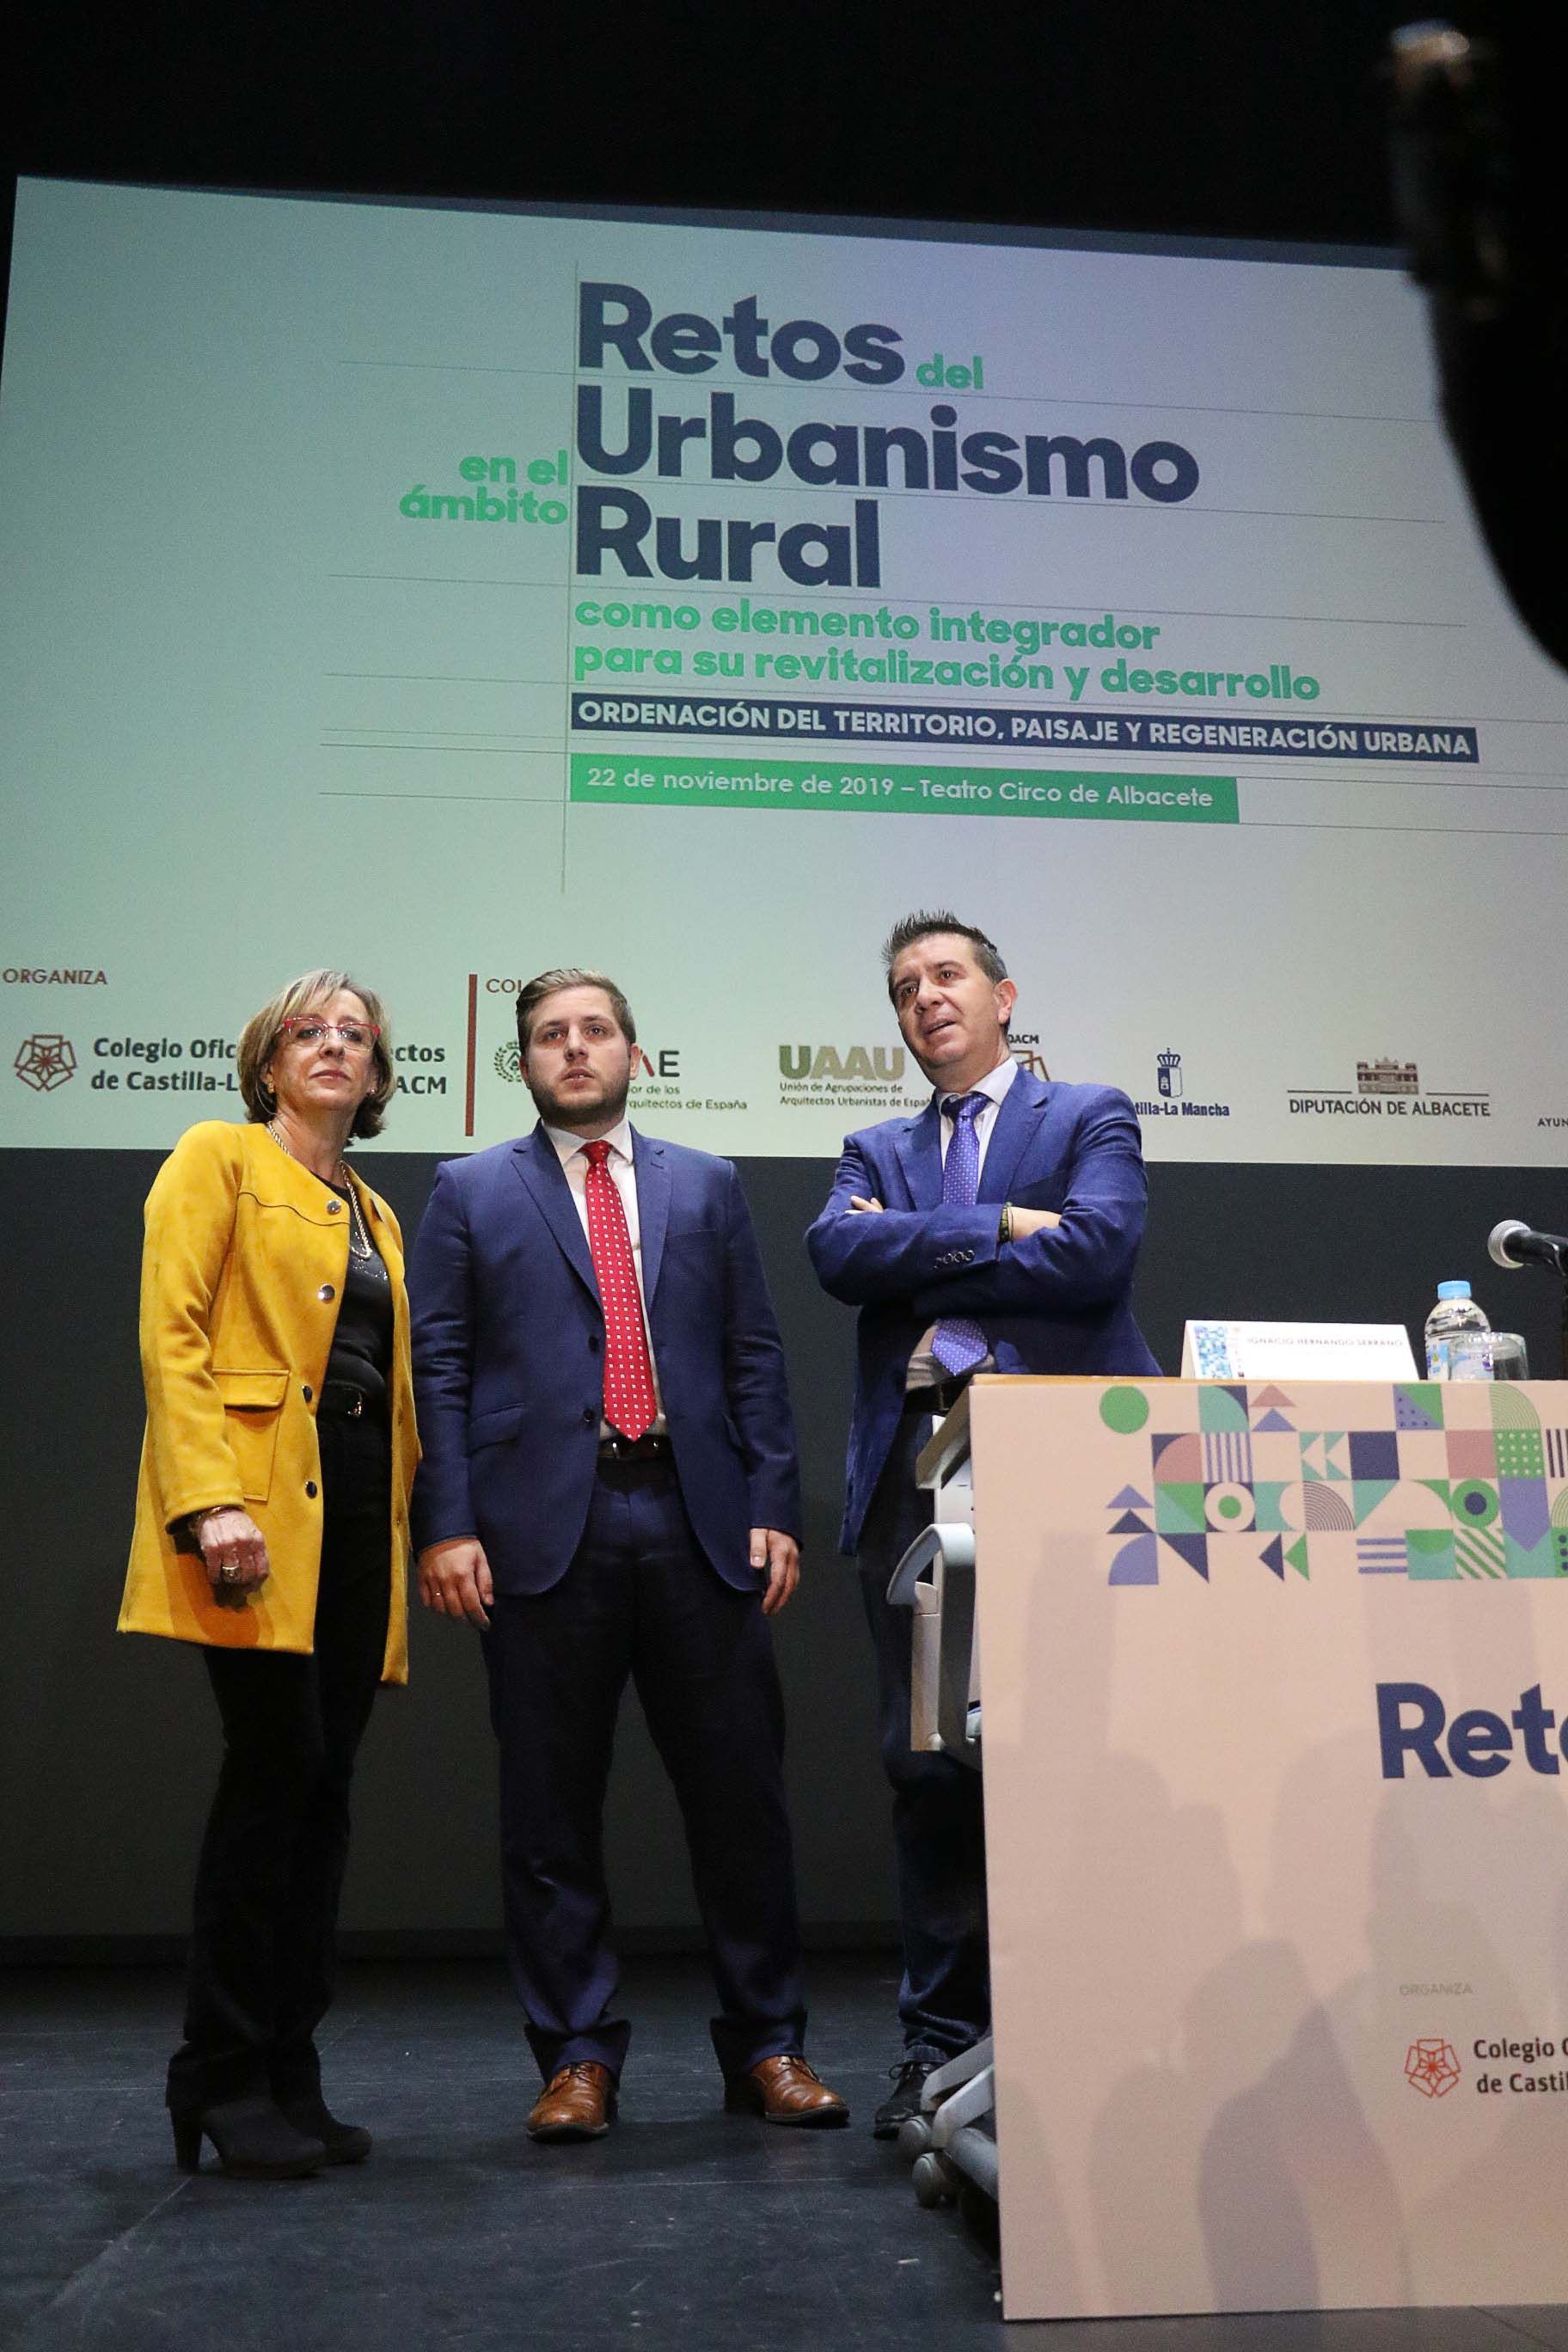 Los arquitectos de Castilla-La Mancha propician el debate sobre los retos del Urbanismo Rural